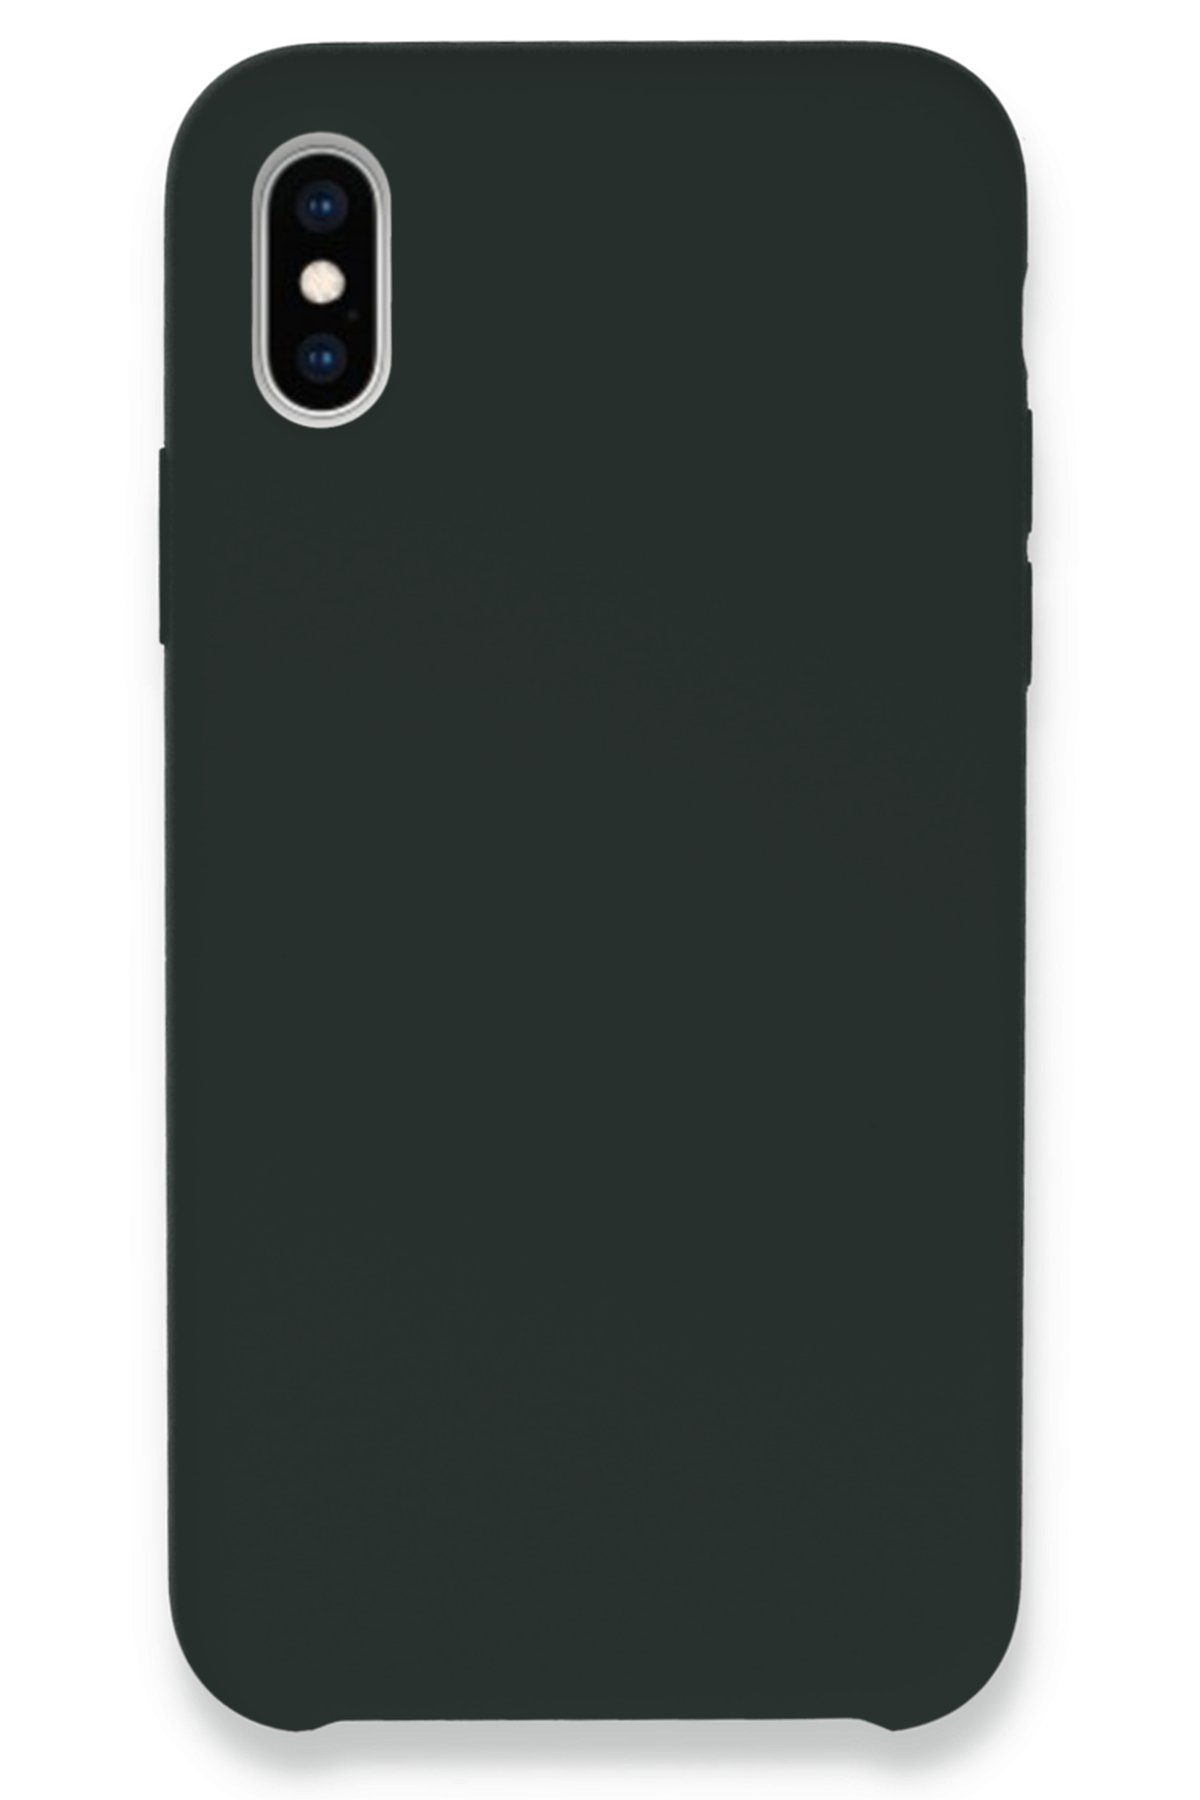 Newface iPhone XS Max Kılıf Miami Şeffaf Silikon  - Açık Mor